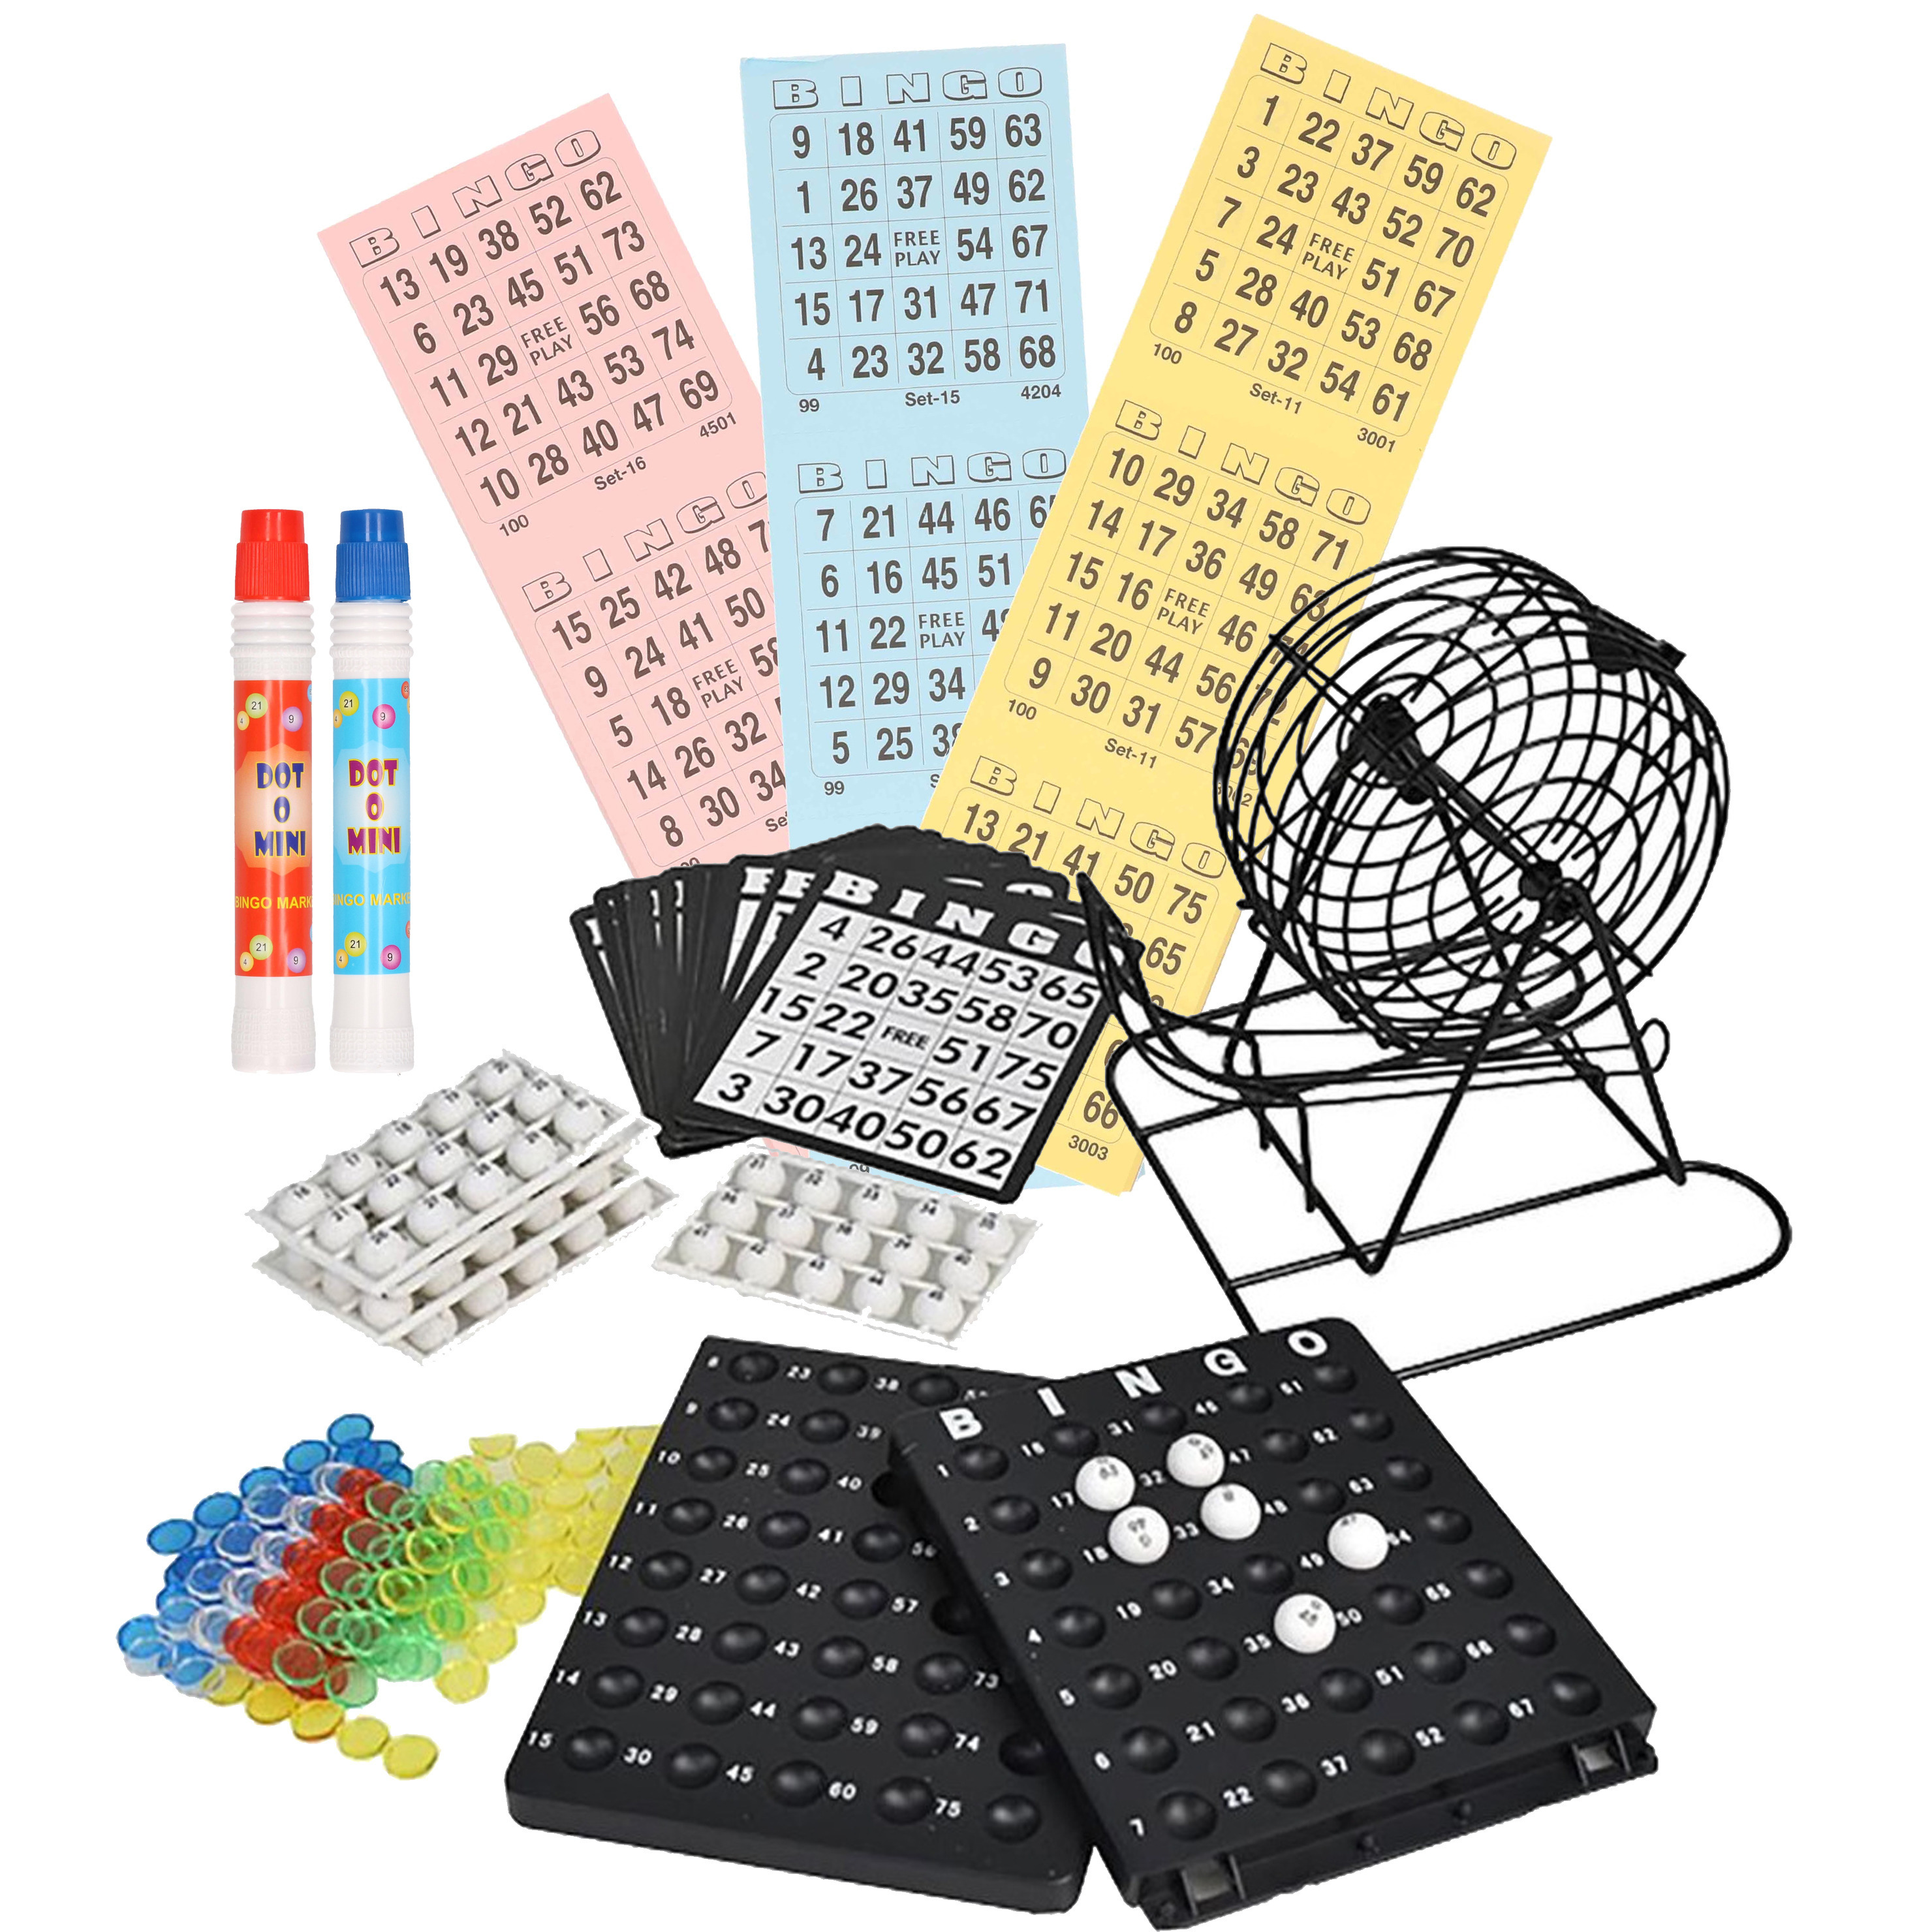 Bingo spel zwart/wit complete set 19 cm nummers 1-75 met molen/168x bingokaarten/2x stiften